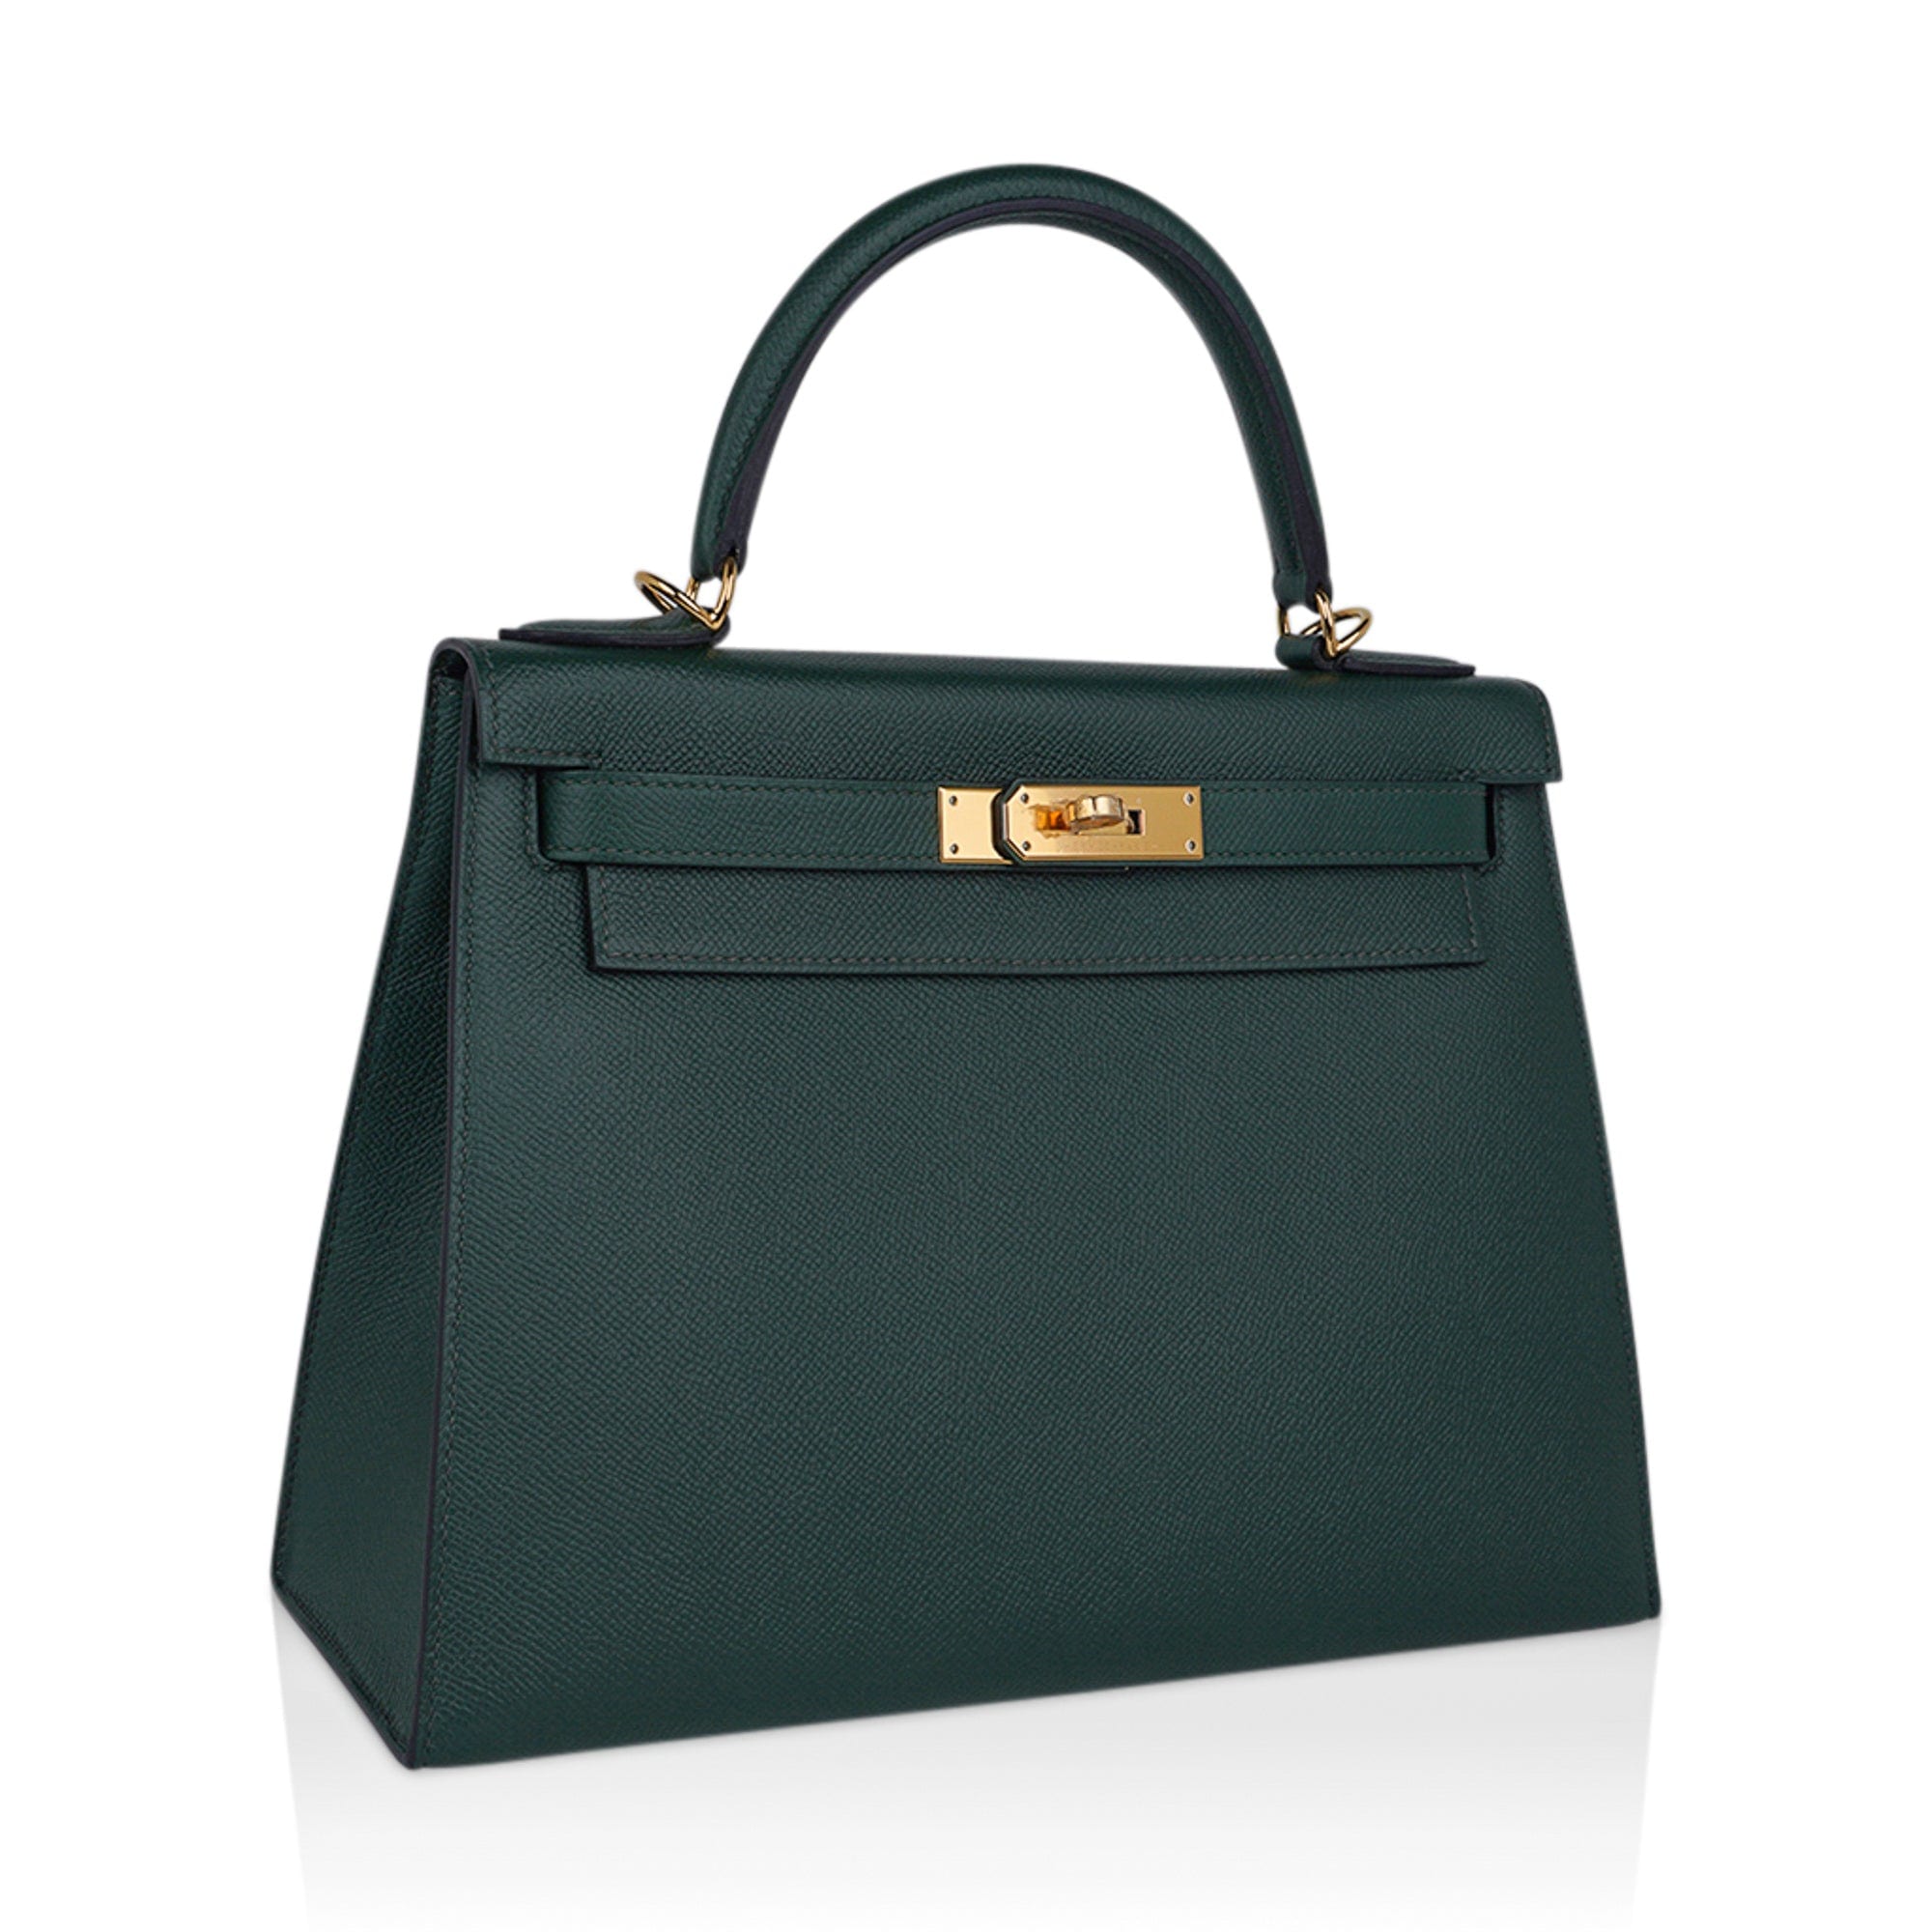 Carryallbags - New Hermes Kelly 25 Vert de gris Epsom in GHW